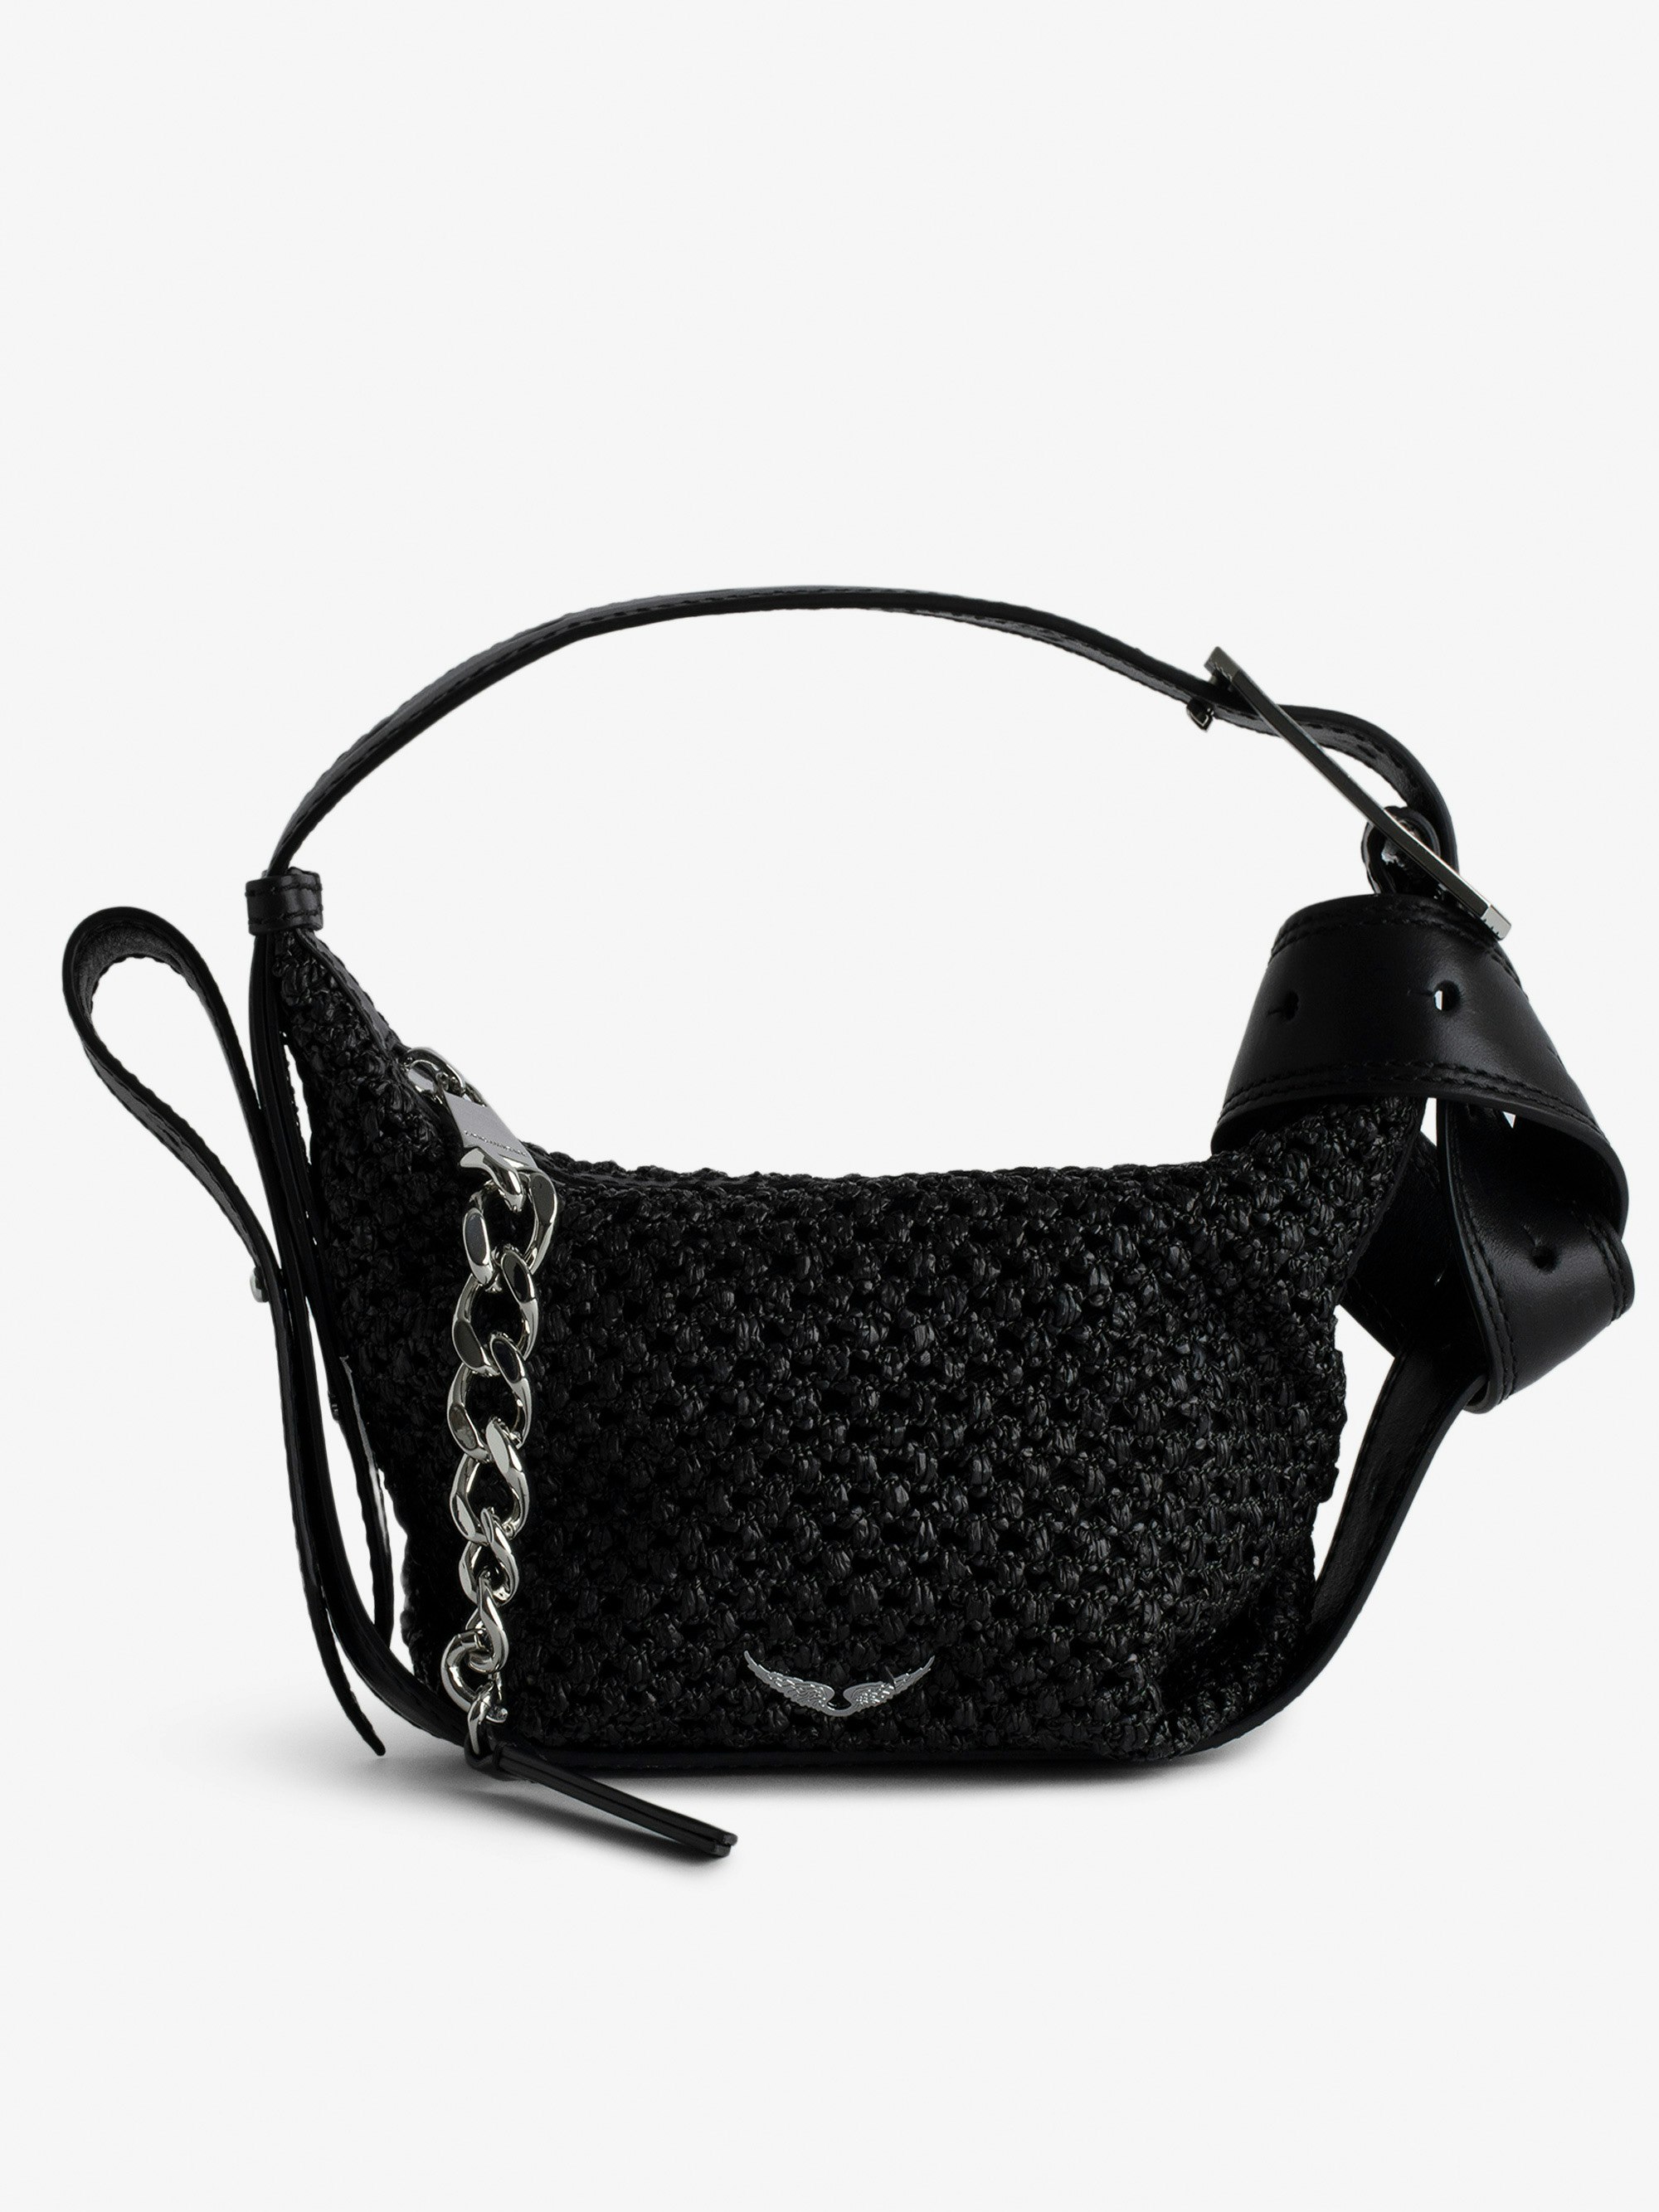 Handtasche Le Cecilia XS - Kleine, schwarze Handtasche im Korbstil mit Schulterriemen aus Leder und „C“-förmiger Metallschnalle.